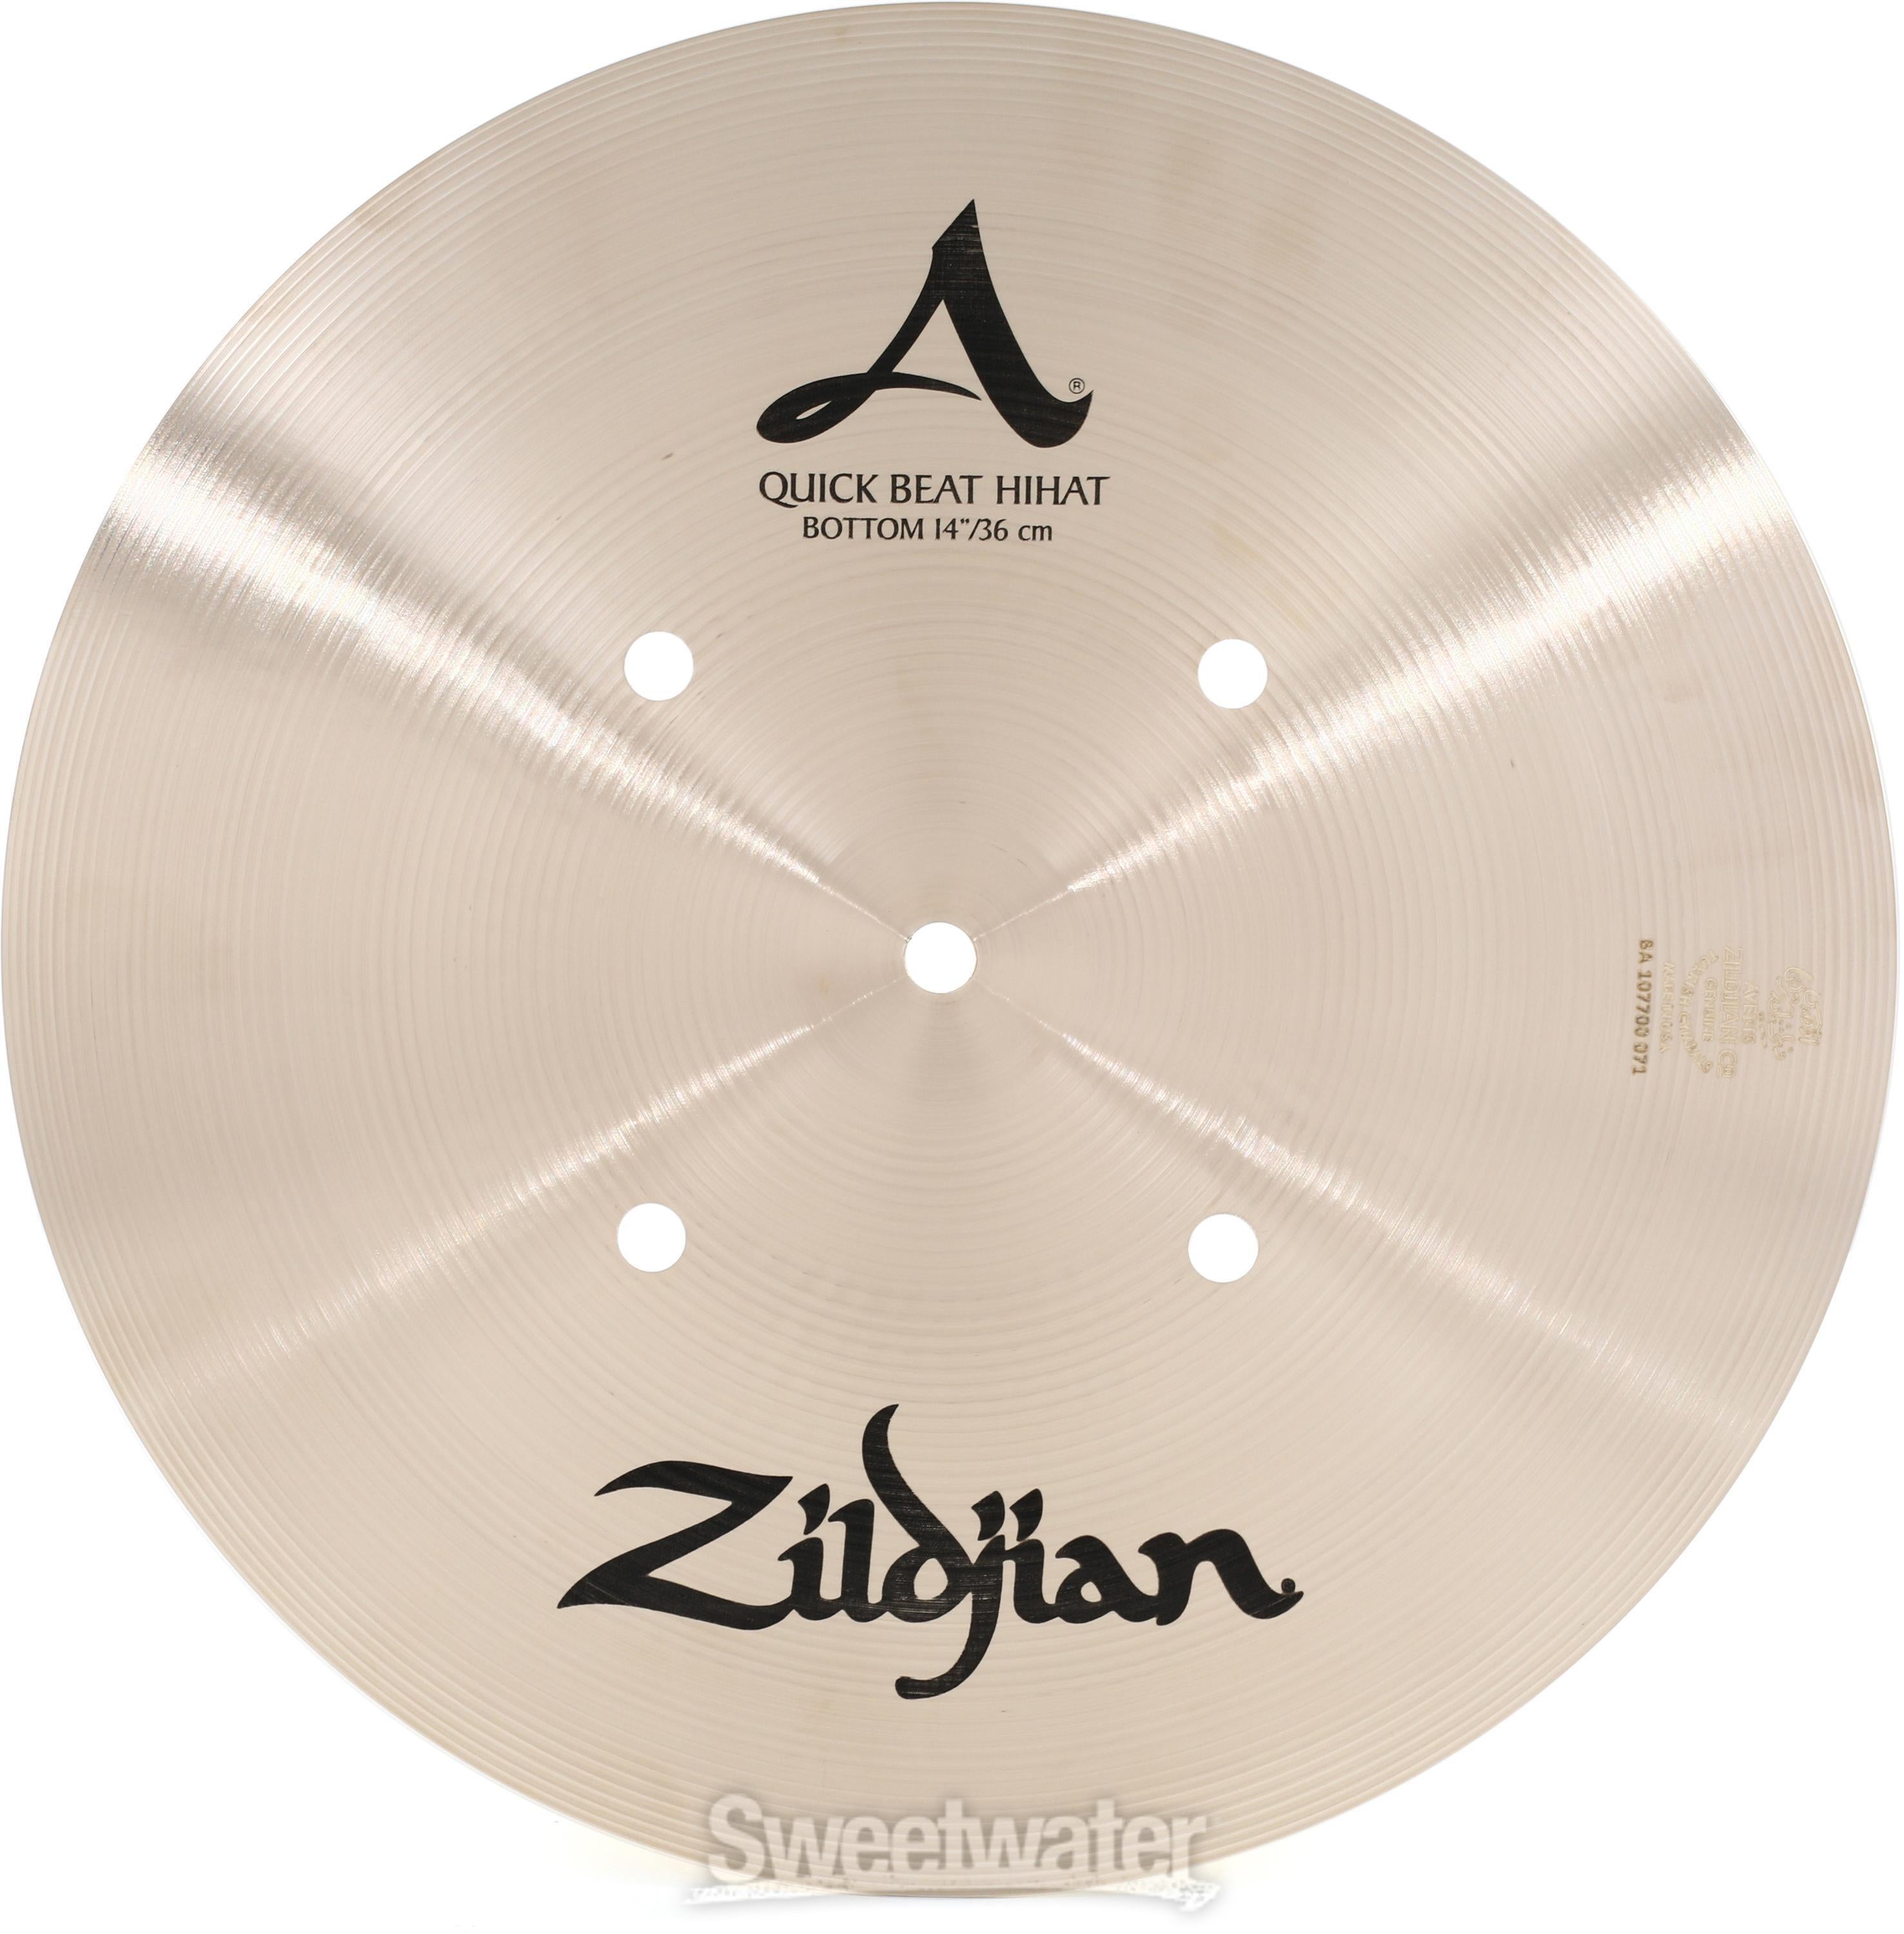 Zildjian Quick Beat 14-inch Hi-hat Cymbals | Sweetwater